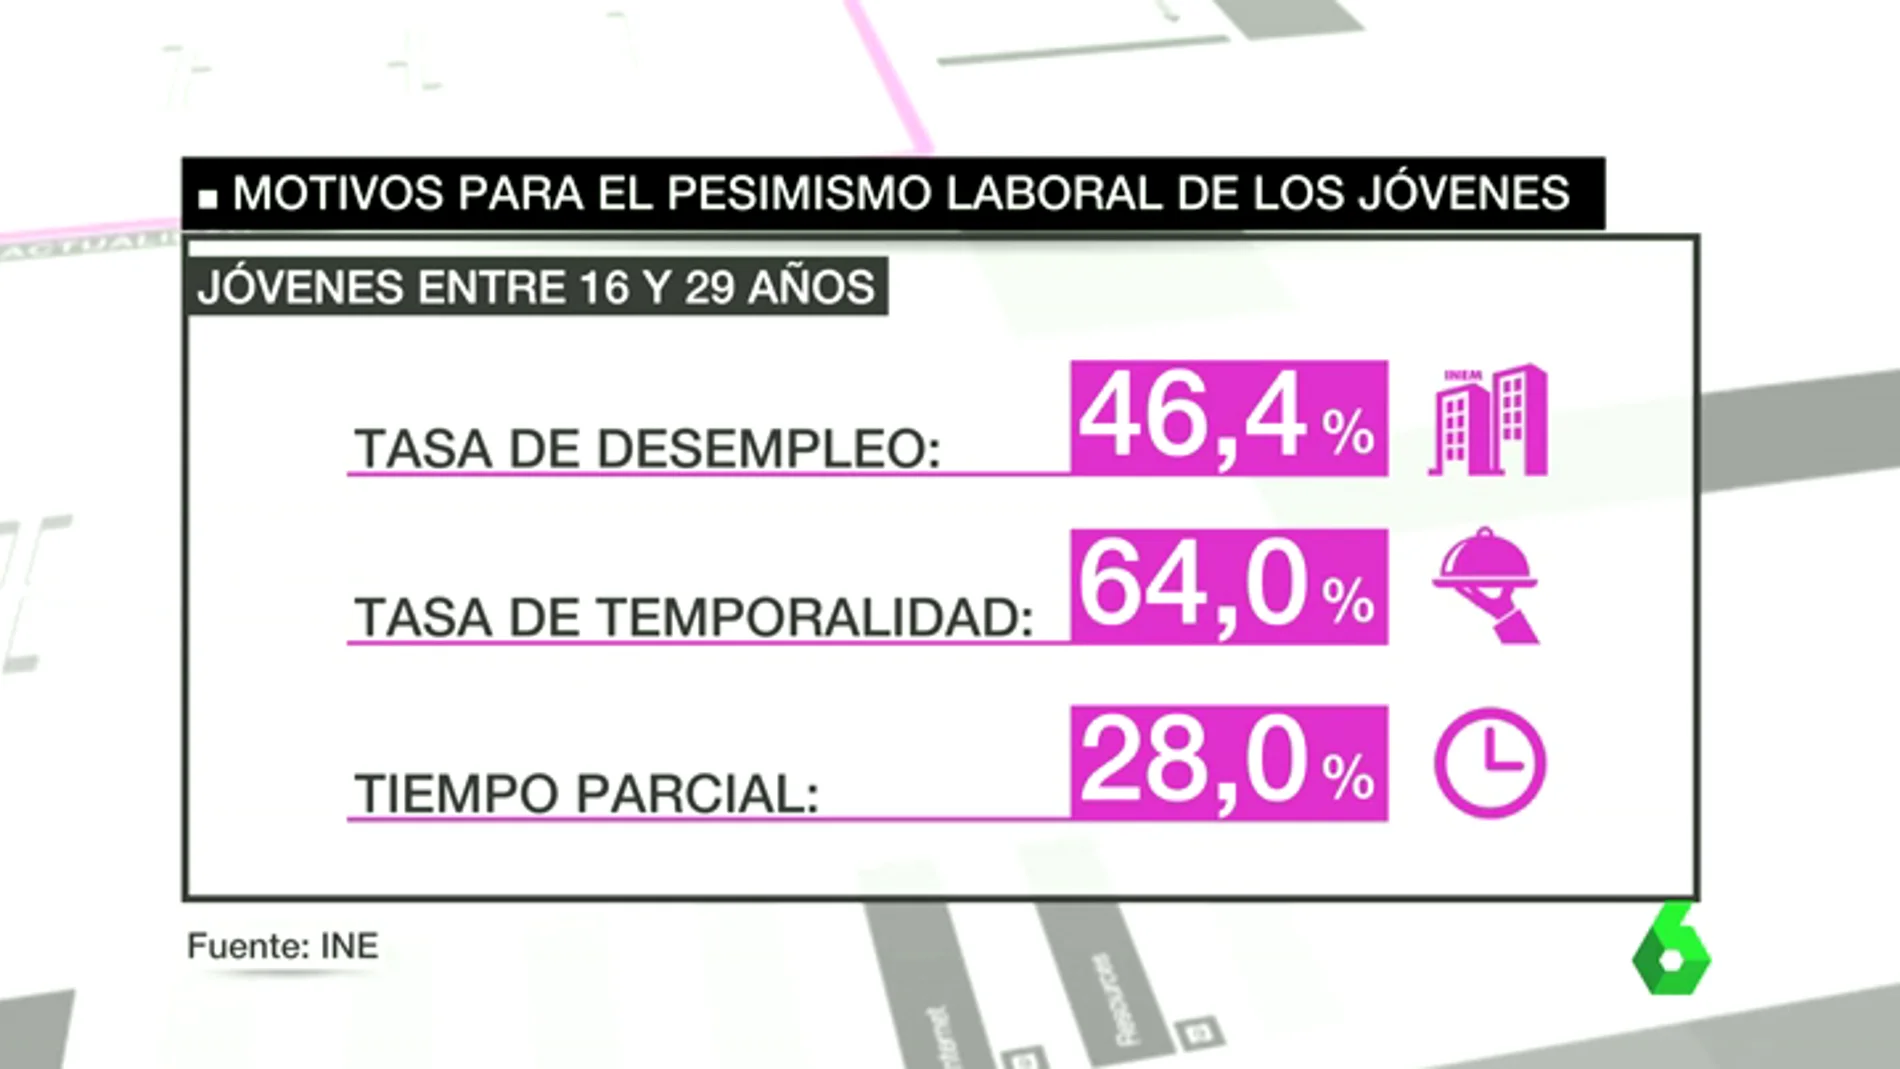 Los jóvenes españoles son los más pesimistas sobre su futuro